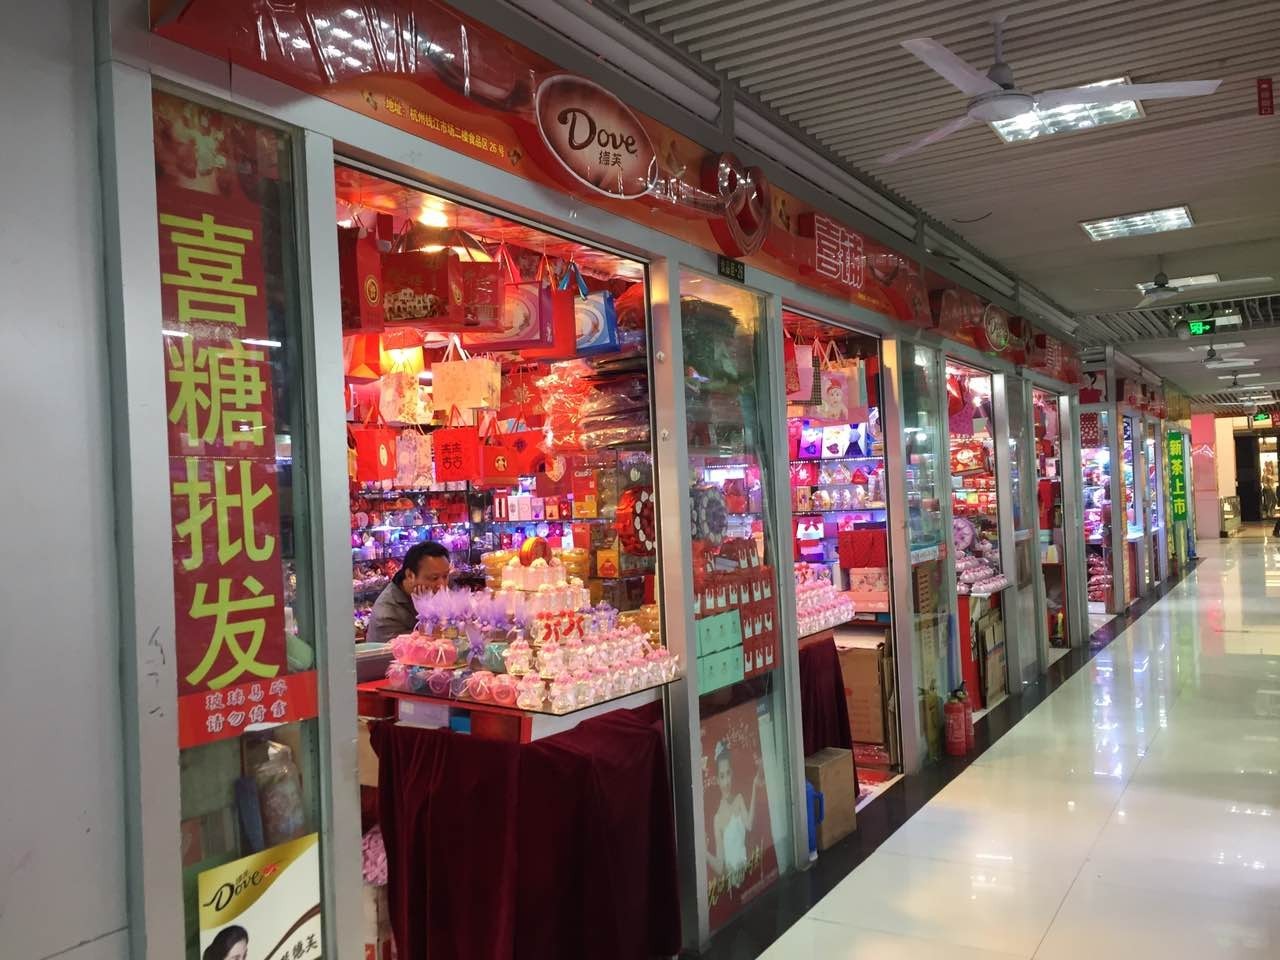 钱江市场近江市场在钱江小商品市场和杭州近江食品市场去转了一圈,几